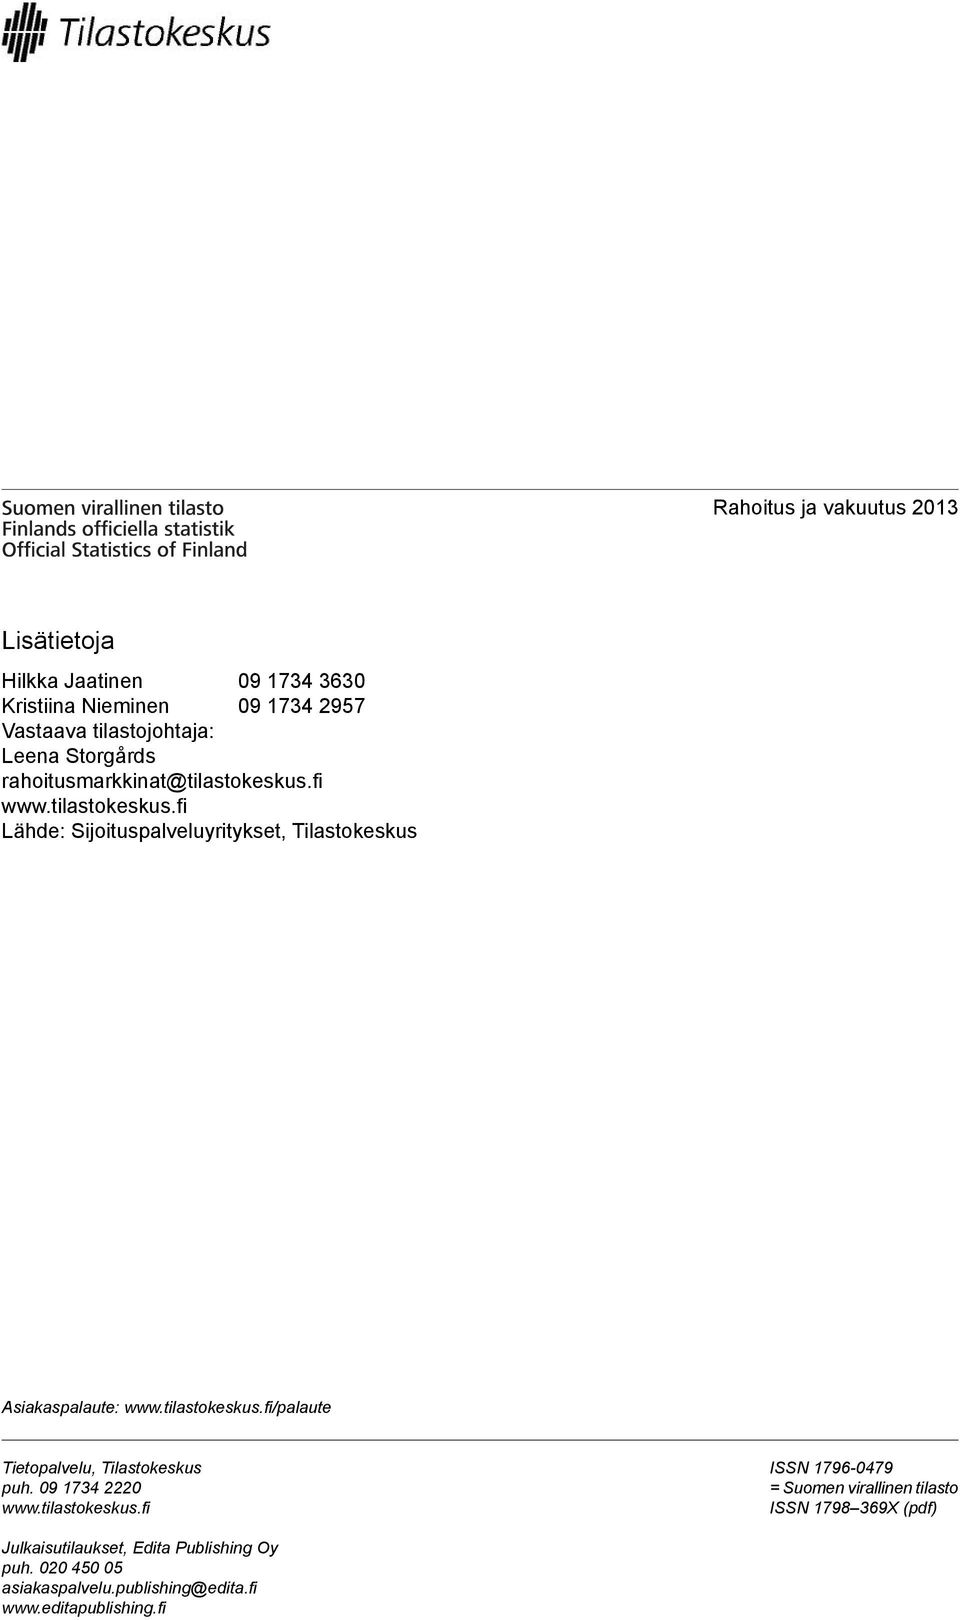 tilastokeskus.fi/palaute Tietopalvelu, Tilastokeskus puh. 09 1734 2220 www.tilastokeskus.fi ISSN 1796-0479 = Suomen virallinen tilasto ISSN 1798 369X (pdf) Julkaisutilaukset, Edita Publishing Oy puh.